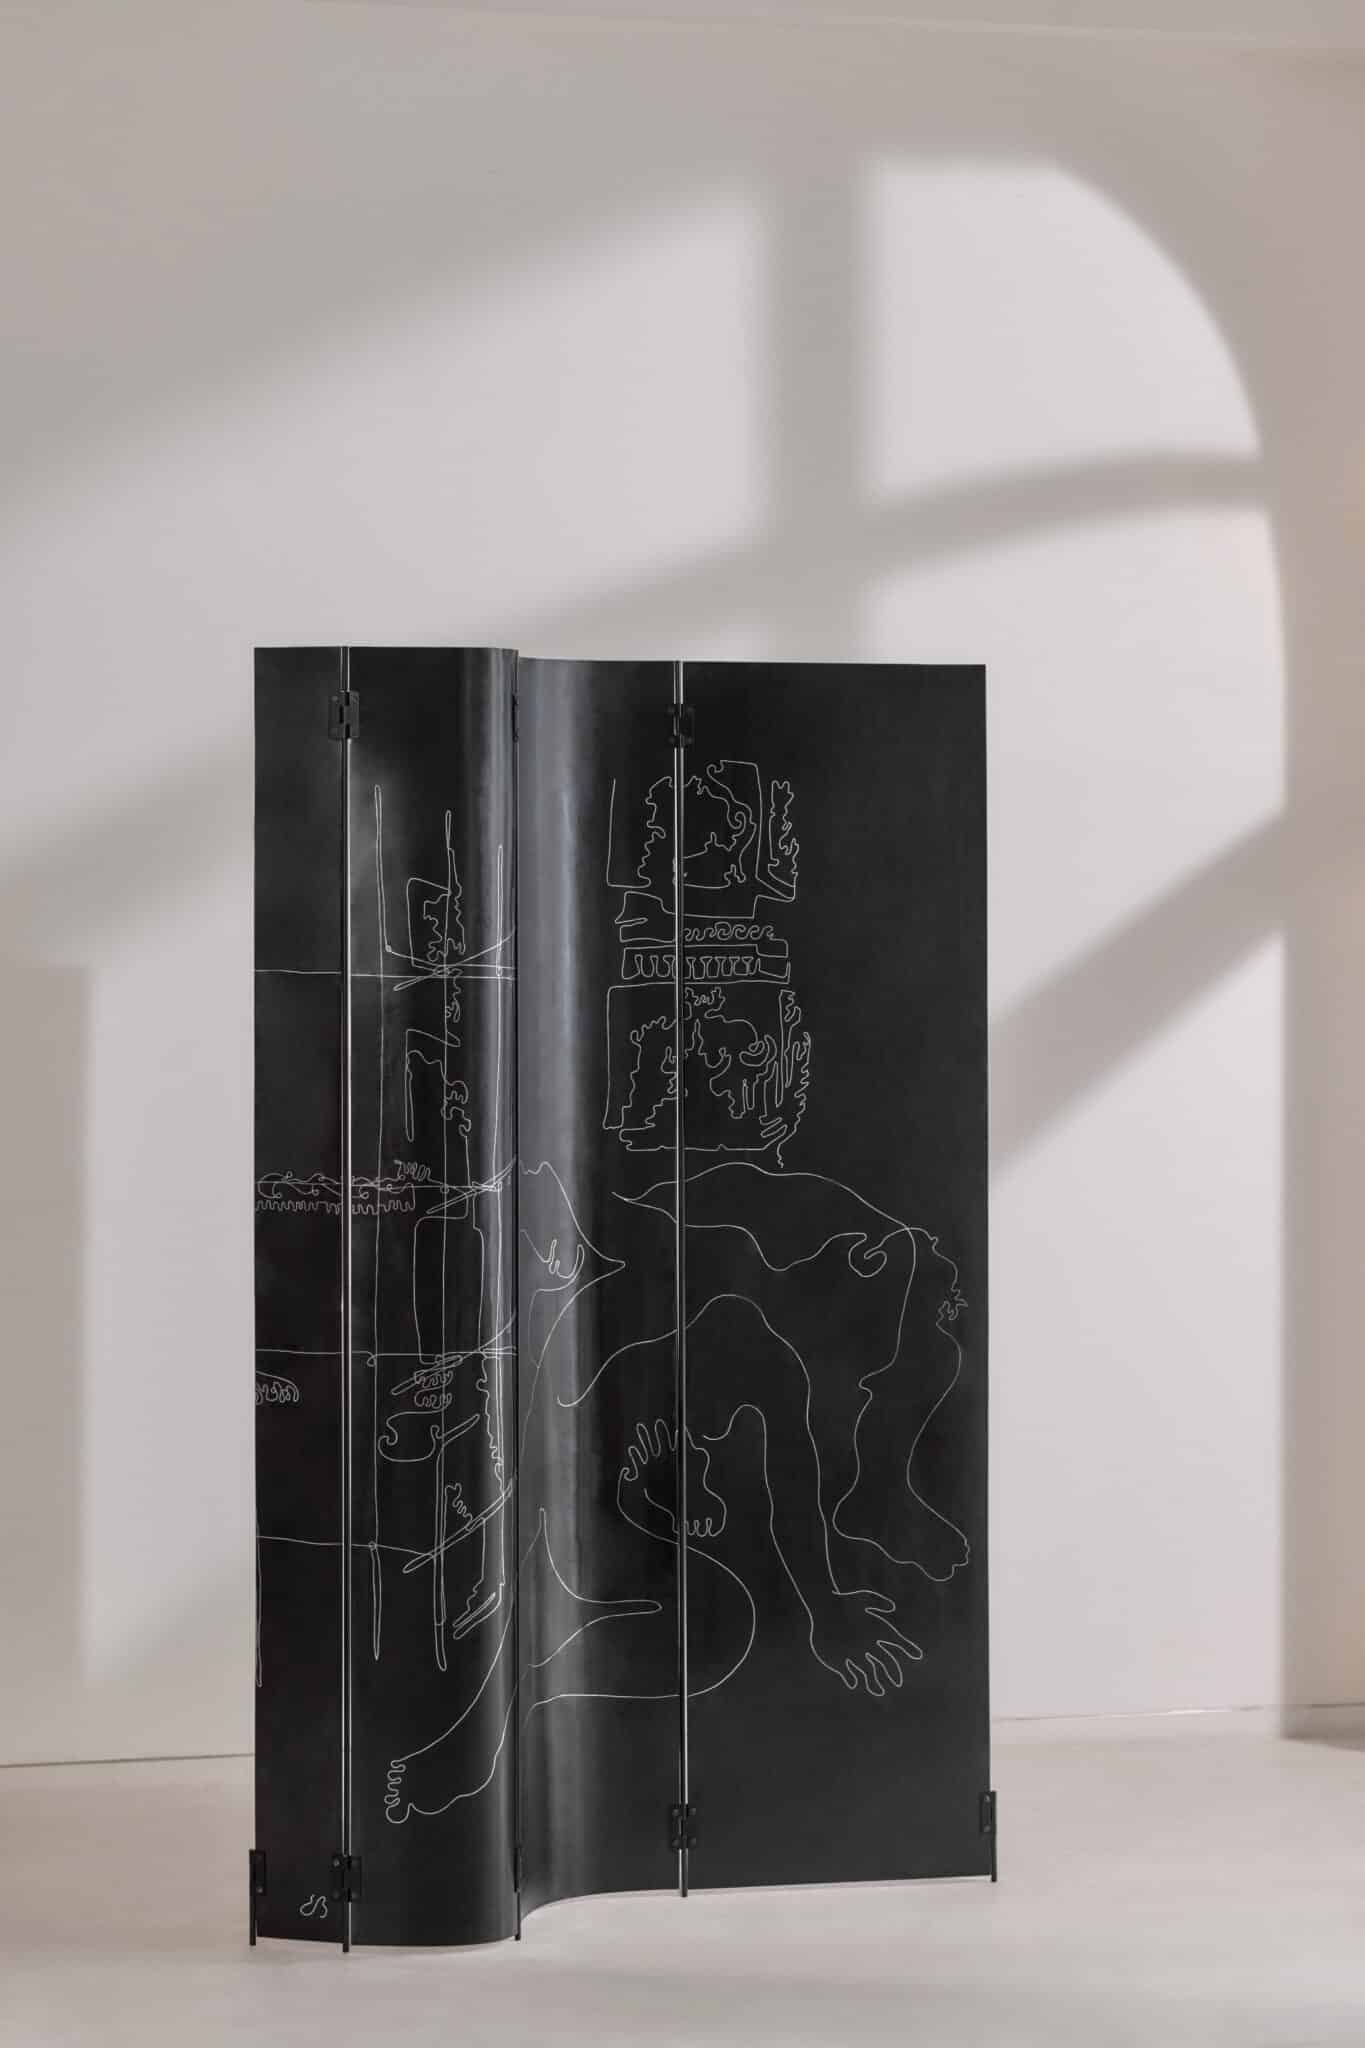 AEquō - ಕೈಯಿಂದ ಮಾಡಿದ ಕಥೆಗಳು. ಫೋಟೋ: AEquō / ಮುಂಬೈ ಗ್ಯಾಲರಿ ವಾರಾಂತ್ಯ